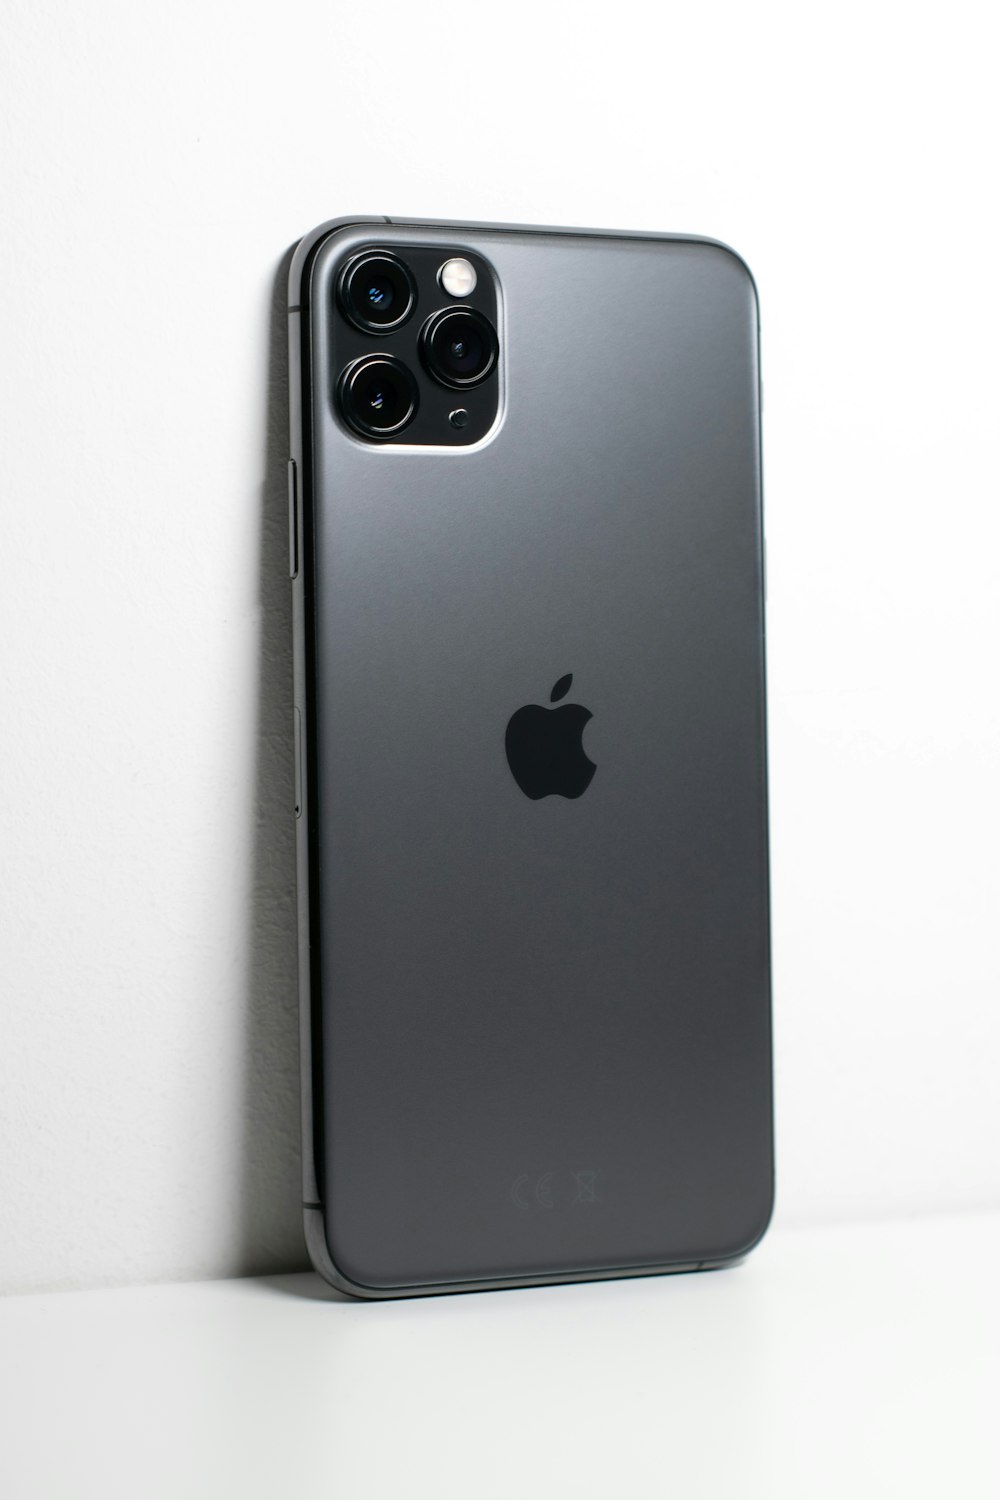 iPhone 7 Plus nero su superficie bianca